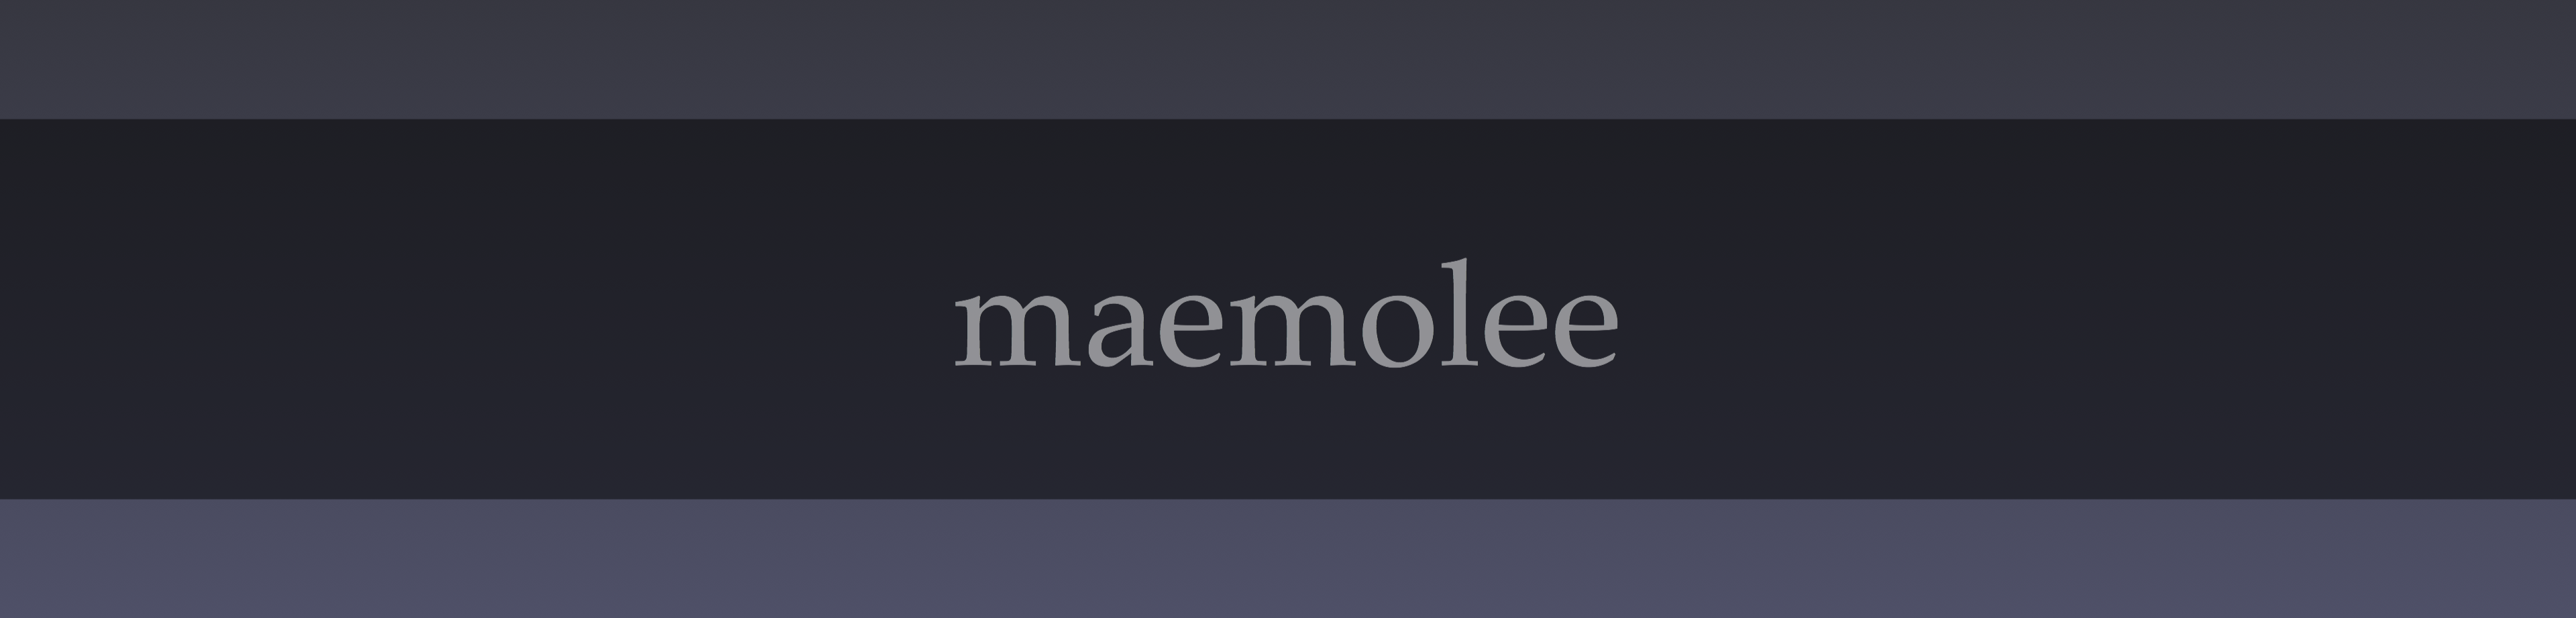 maemolee现在知乎用户太多了,每个问题都有几百个回答,看不过来咯.